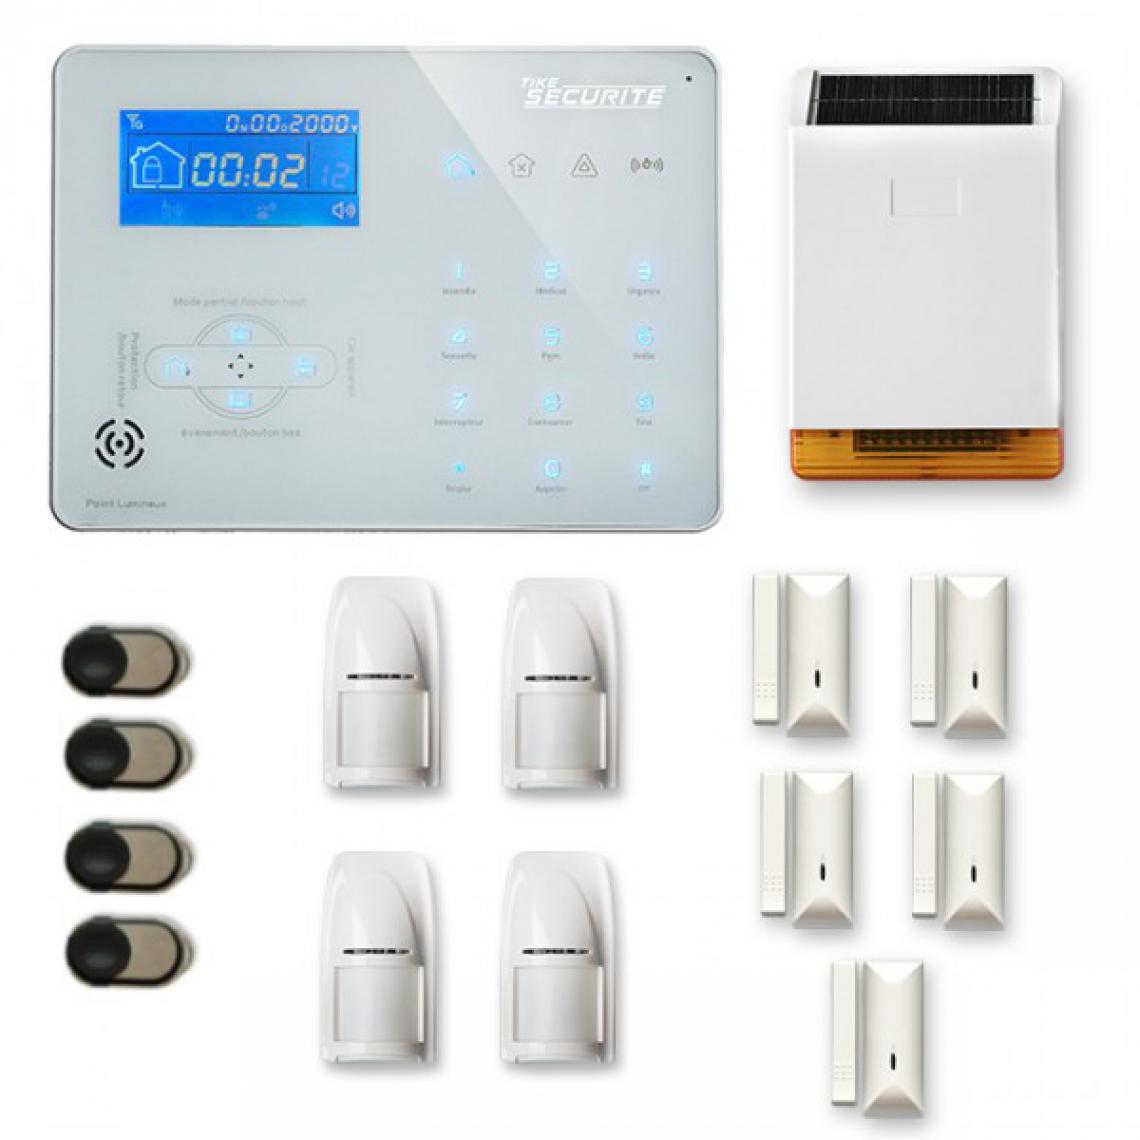 Tike Securite - Alarme maison sans fil ICE-B25 Compatible Box internet et GSM - Alarme connectée